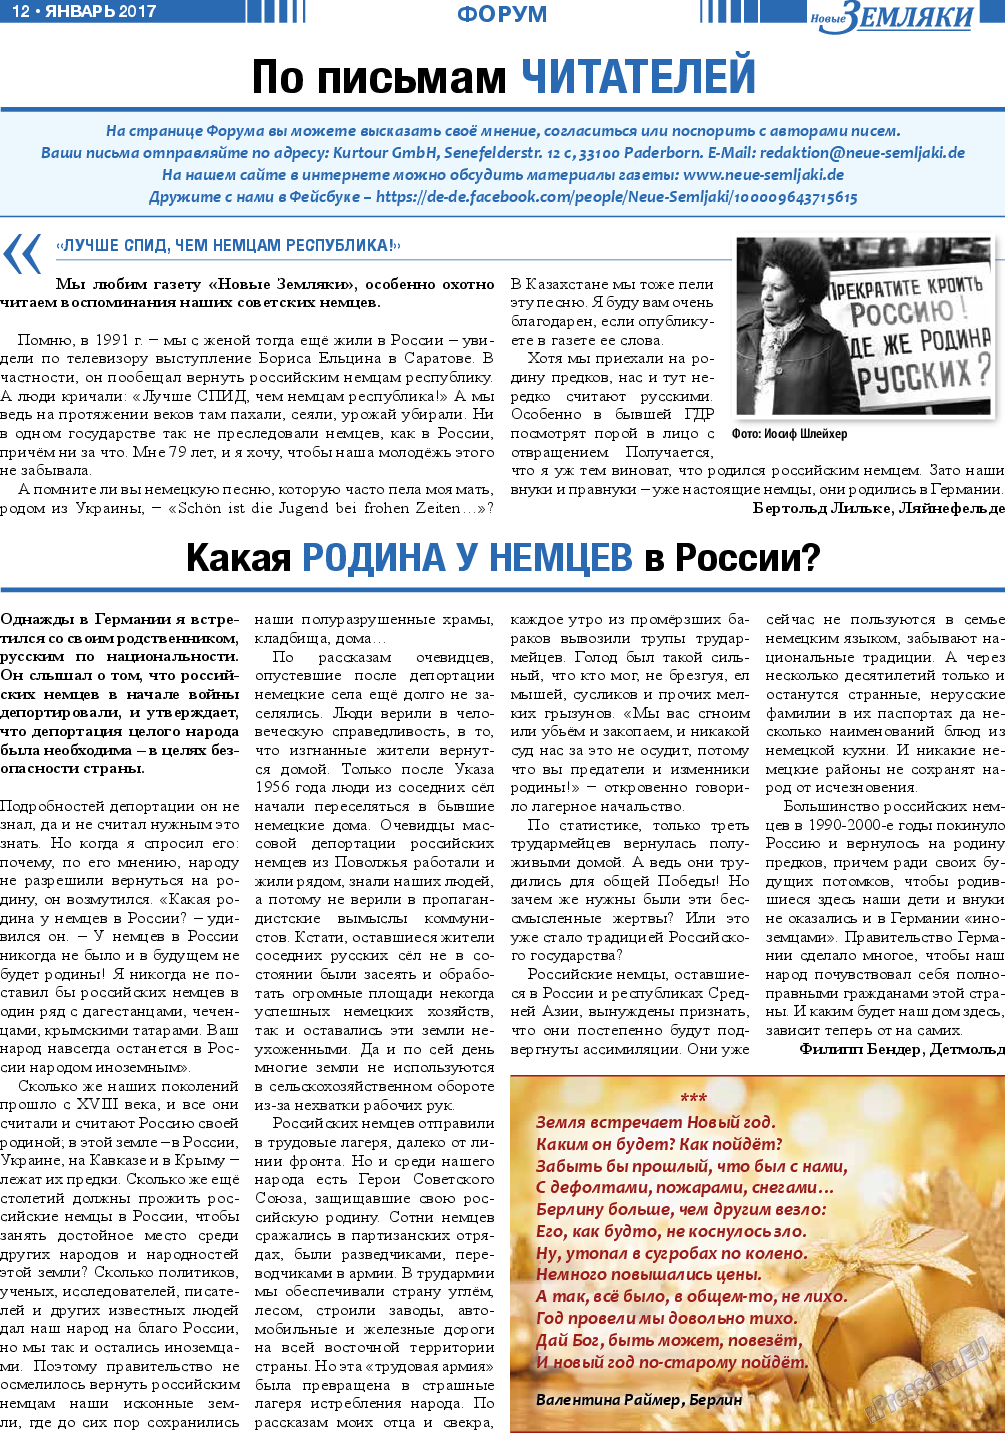 Новые Земляки, газета. 2017 №1 стр.12